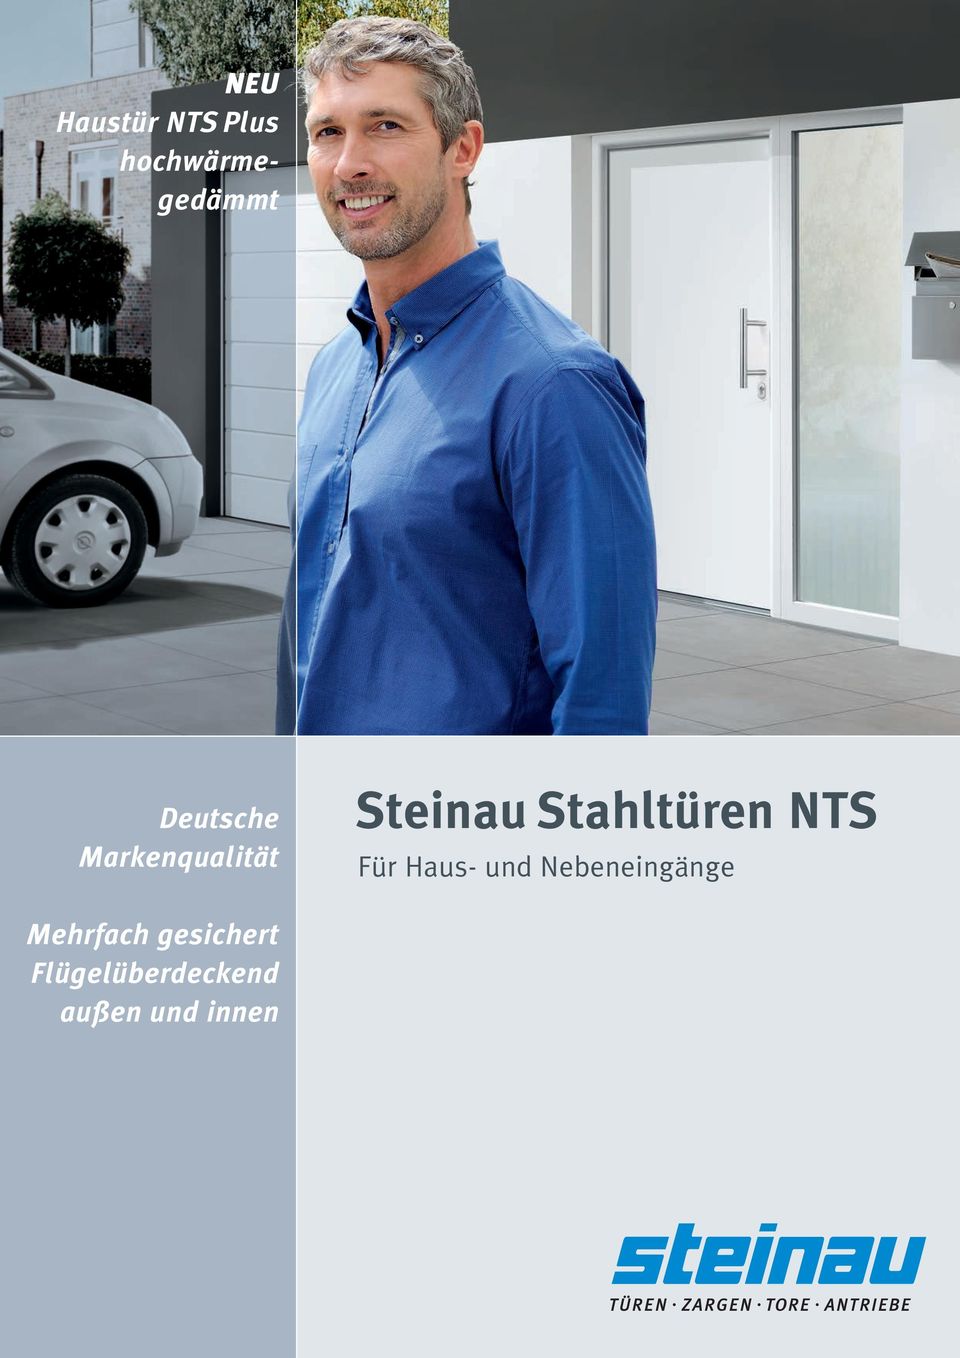 Stahltüren NTS Für Haus- und